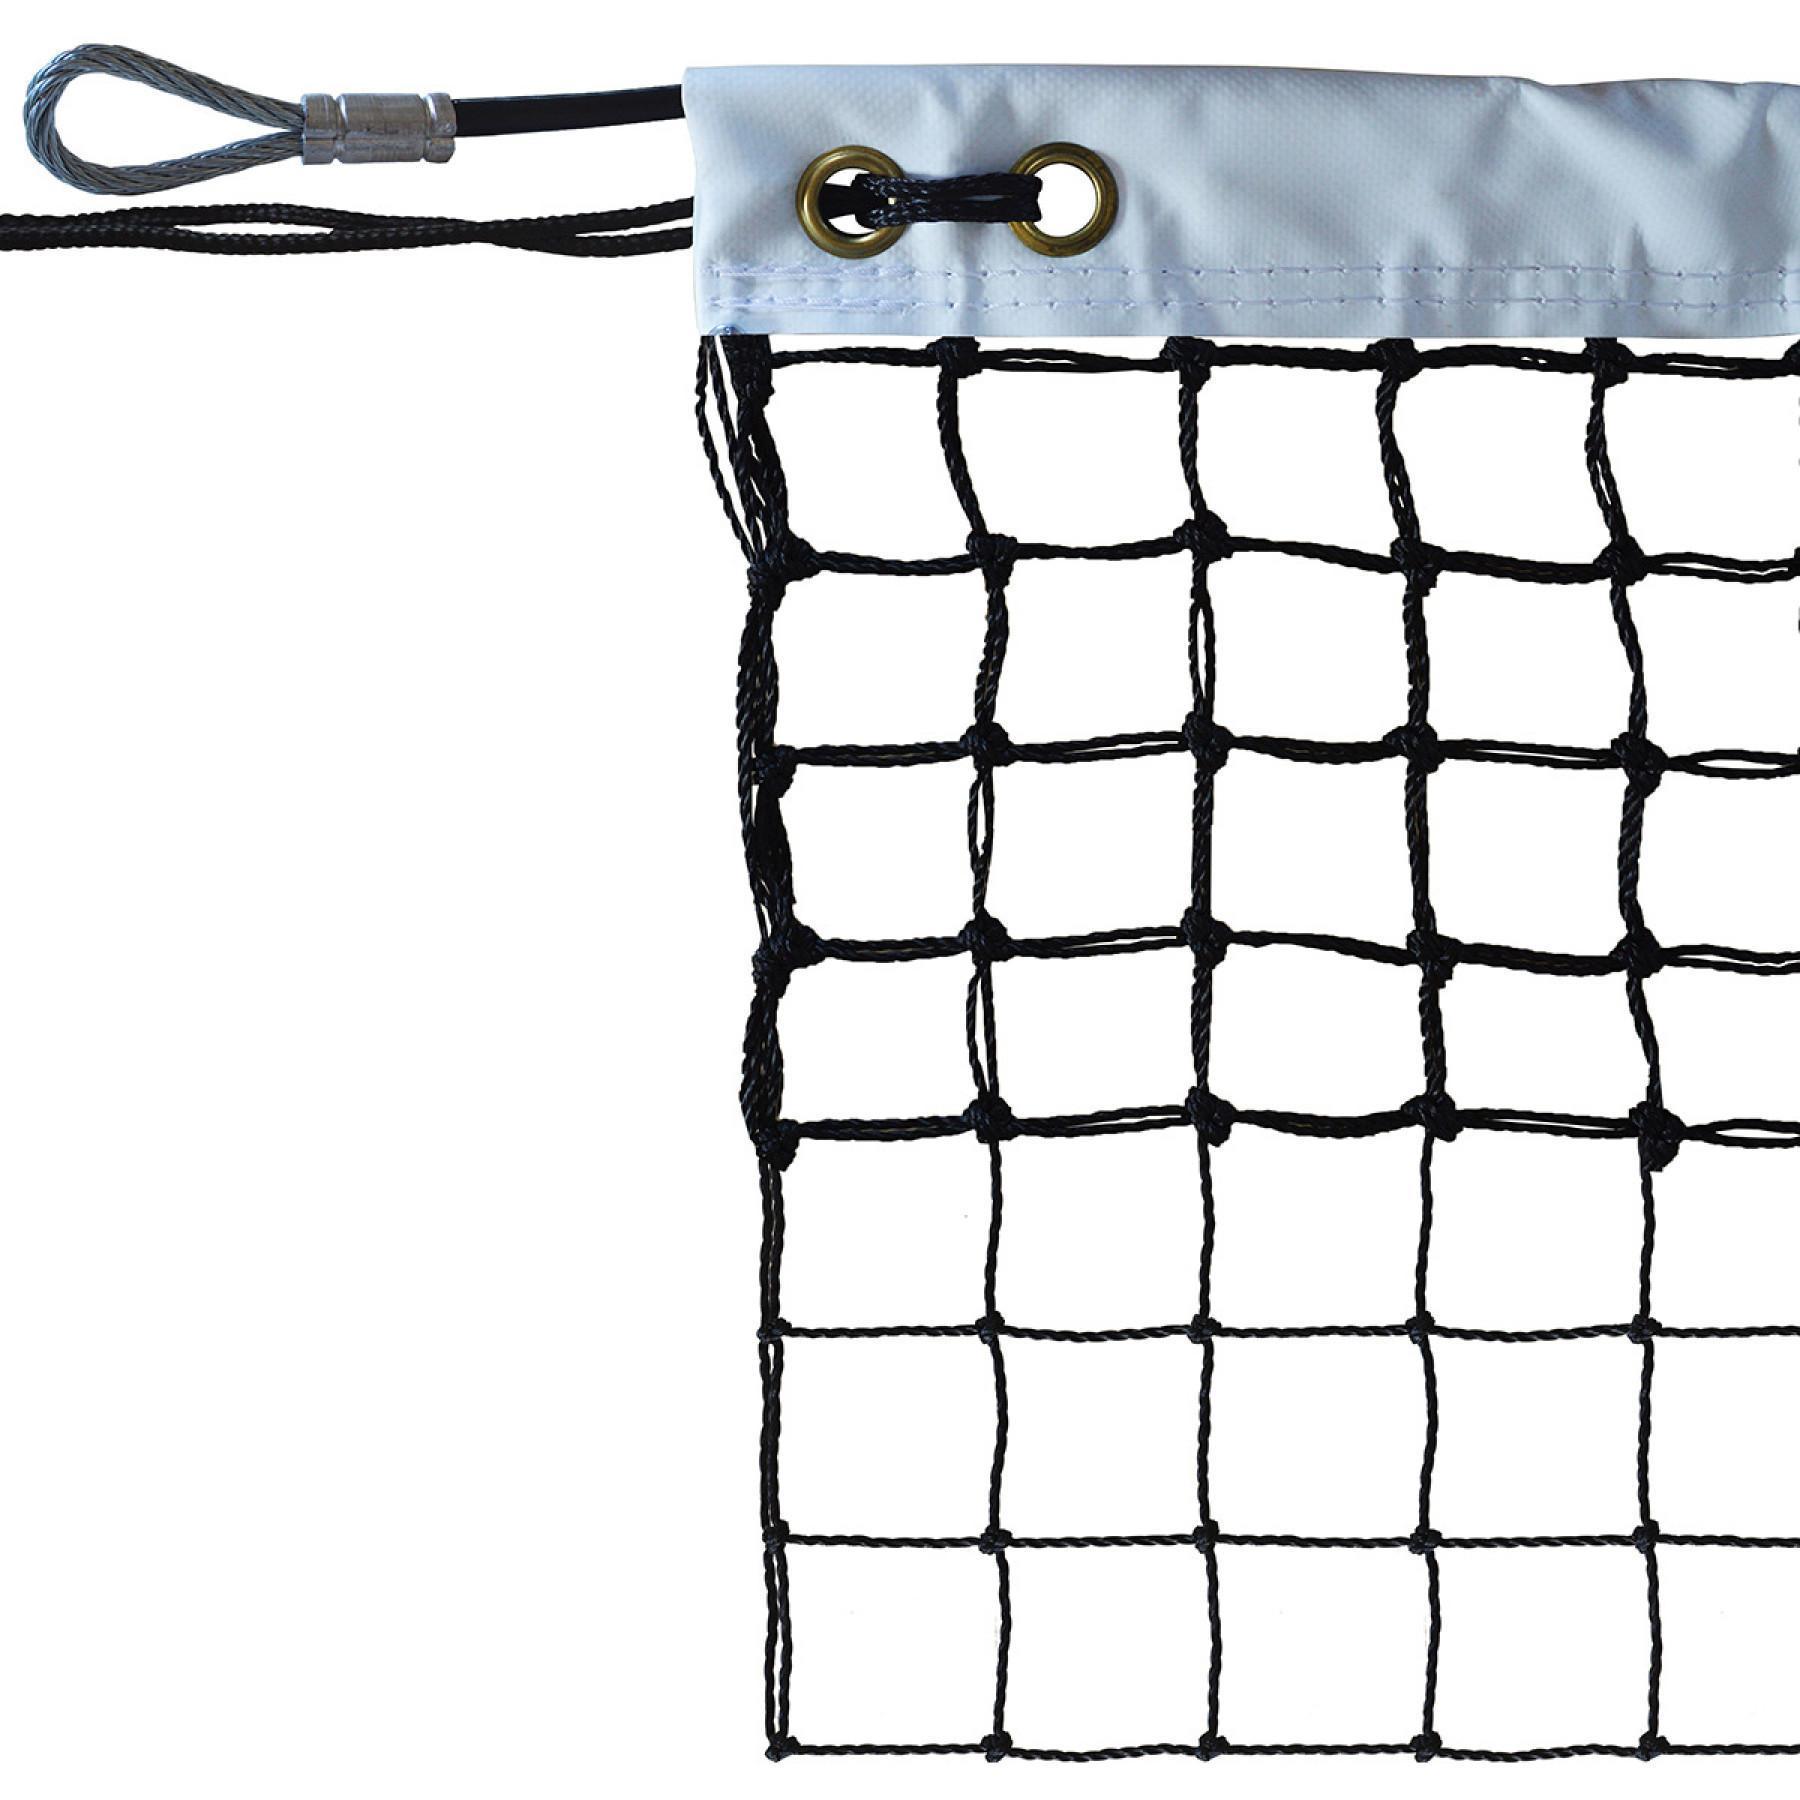 Tennisnet gekabeld 2mm mesh 45 verdubbeld op 6 rijen Sporti France